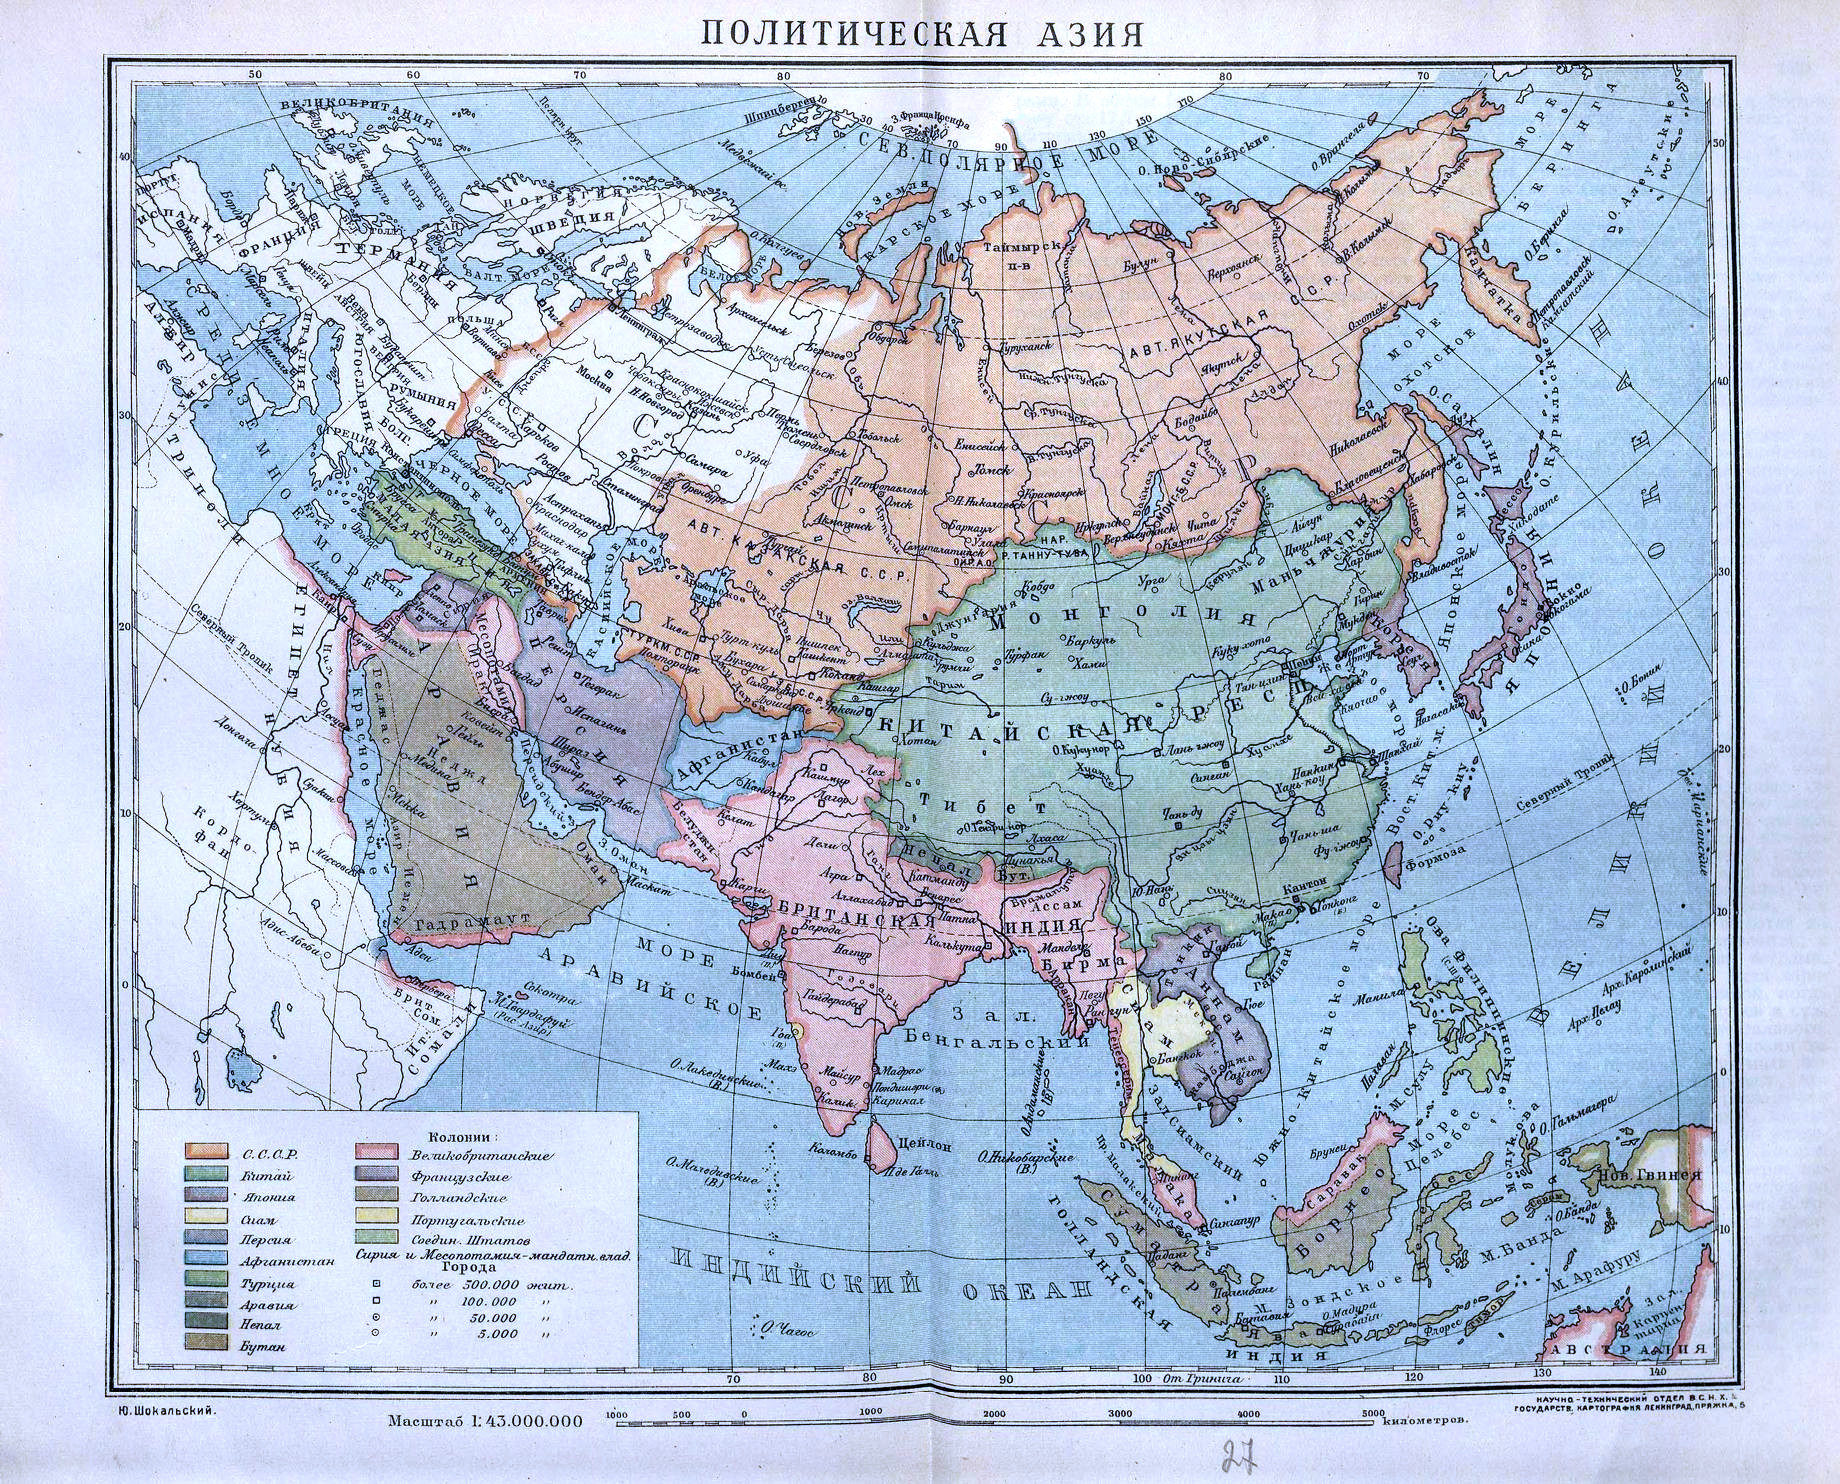 Азия. Политическая карта